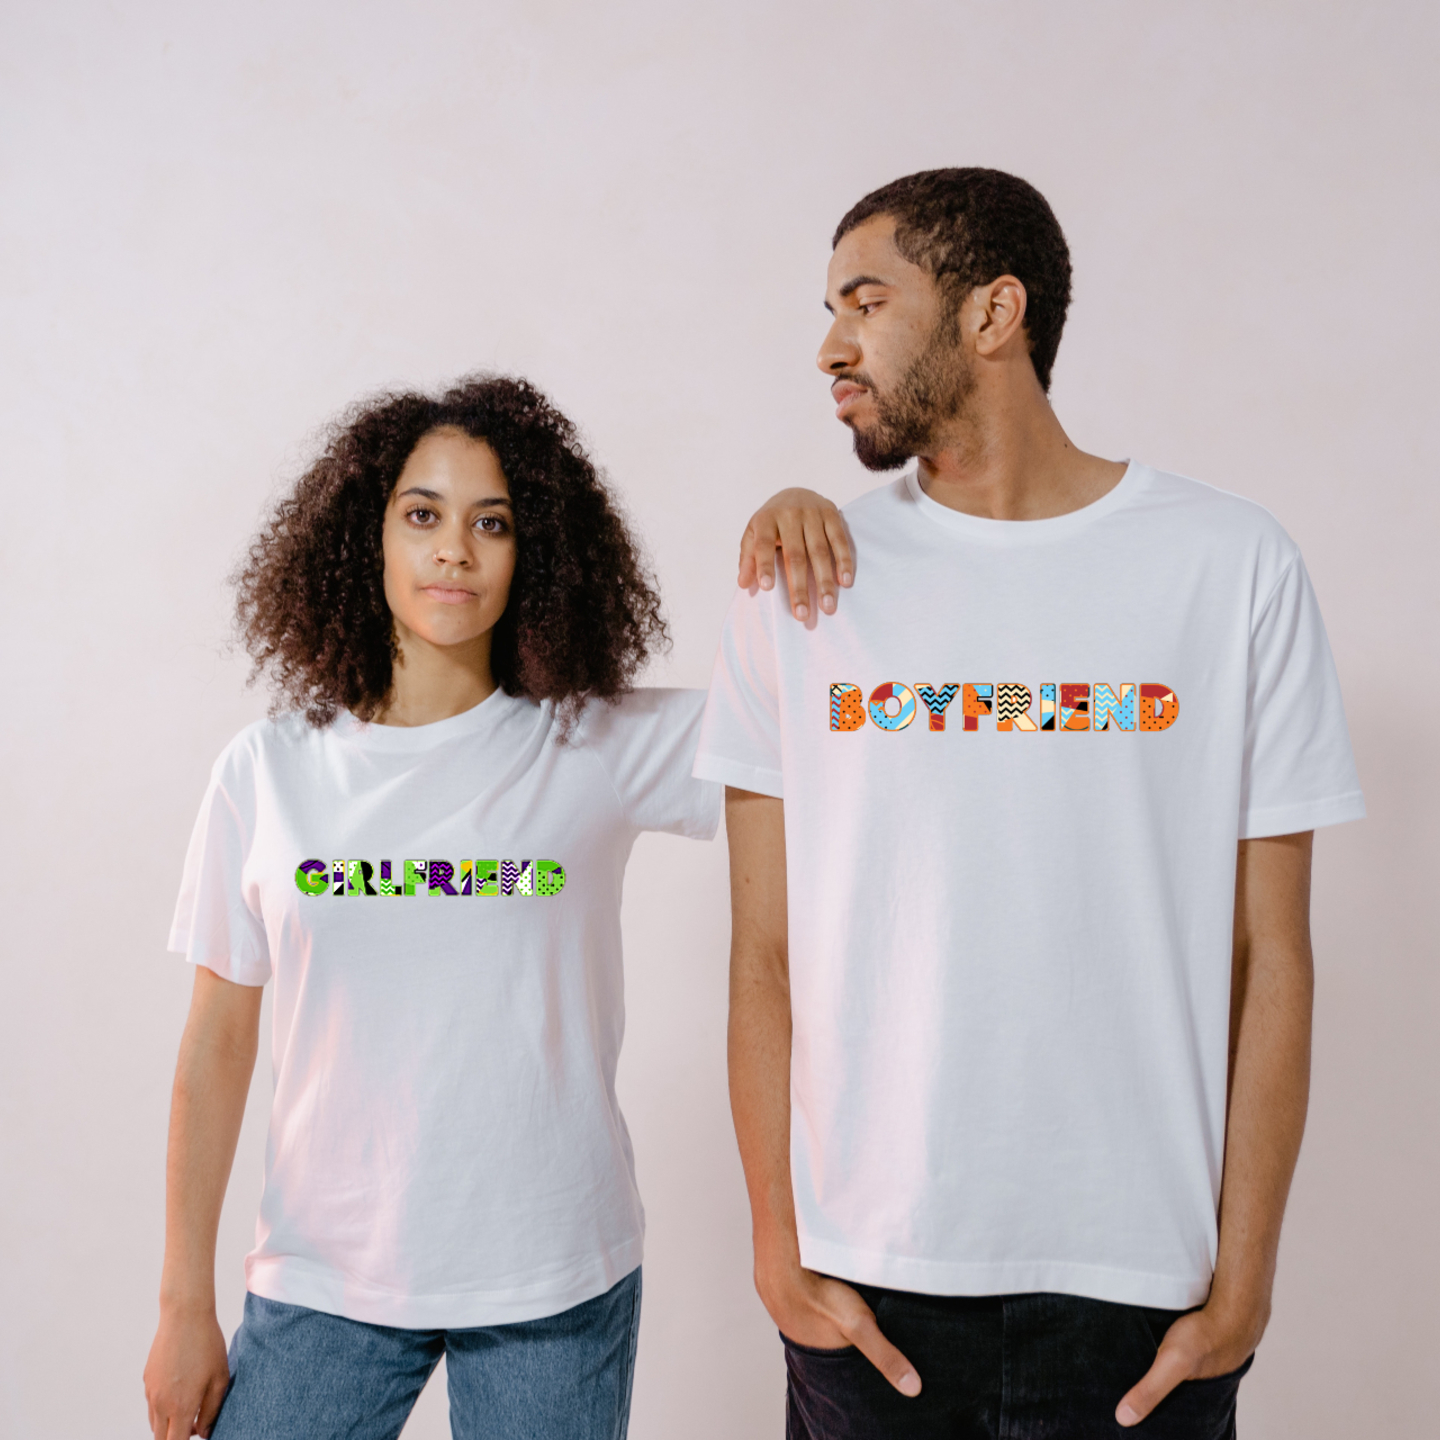 Boyfriend & Girlfriend Printed T-Shirt For Valentine Day Gift